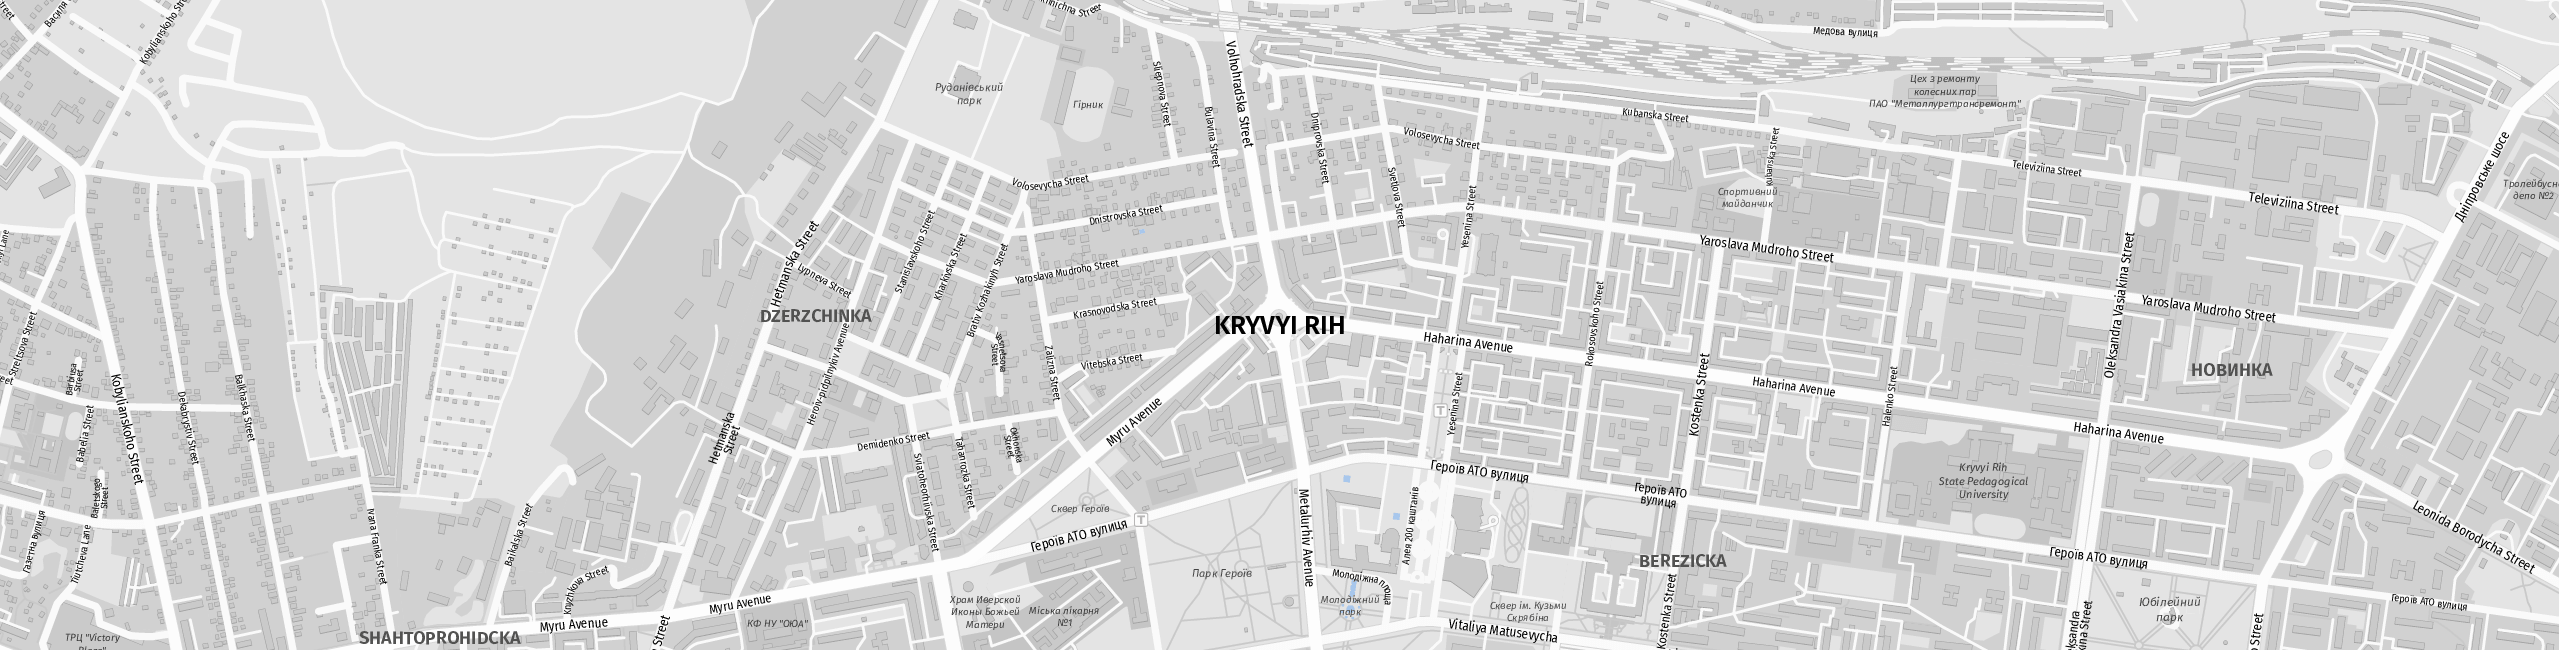 Stadtplan Krywyj Rih zum Downloaden.